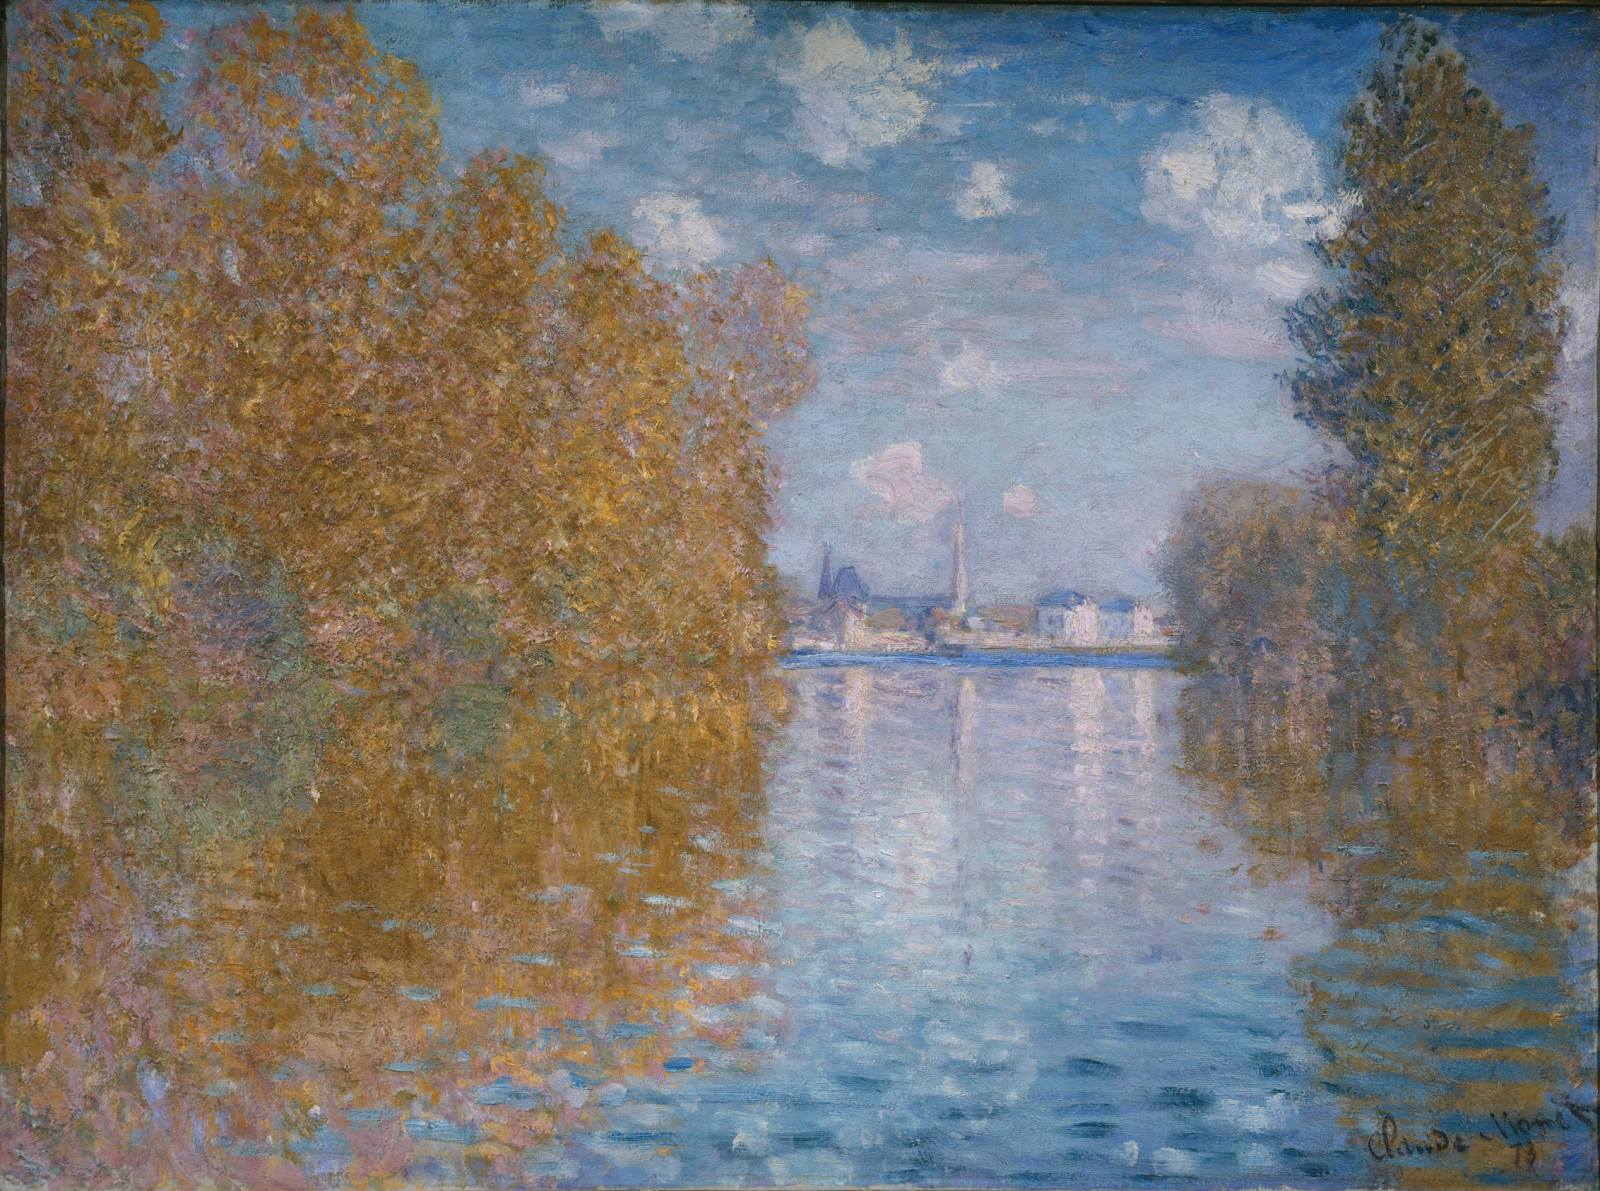 아르장퇴유의 가을 인상(Autumn Effect at Argenteuil) by Claude Monet - 1873 - 55 x 74.5 cm 